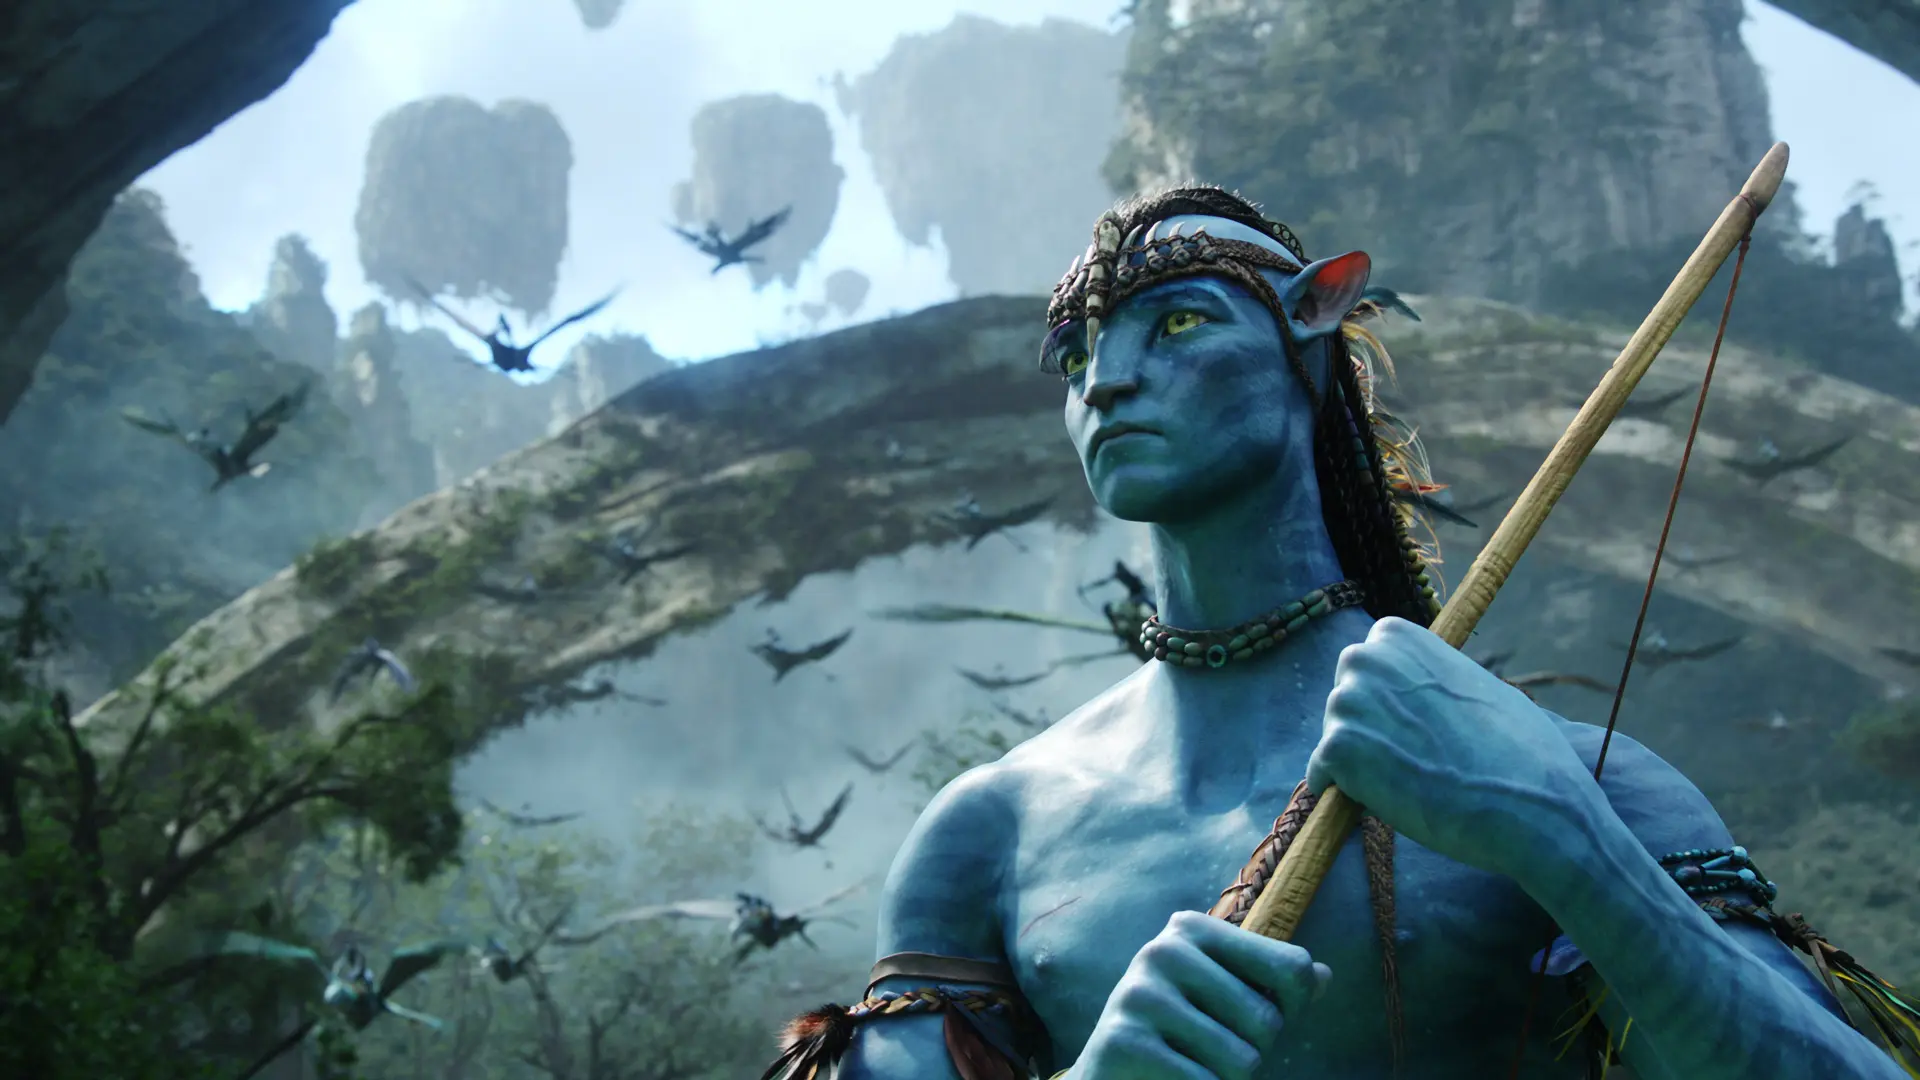 Data premiér dalších čtyř Avatarů oficiálně potvrzena!